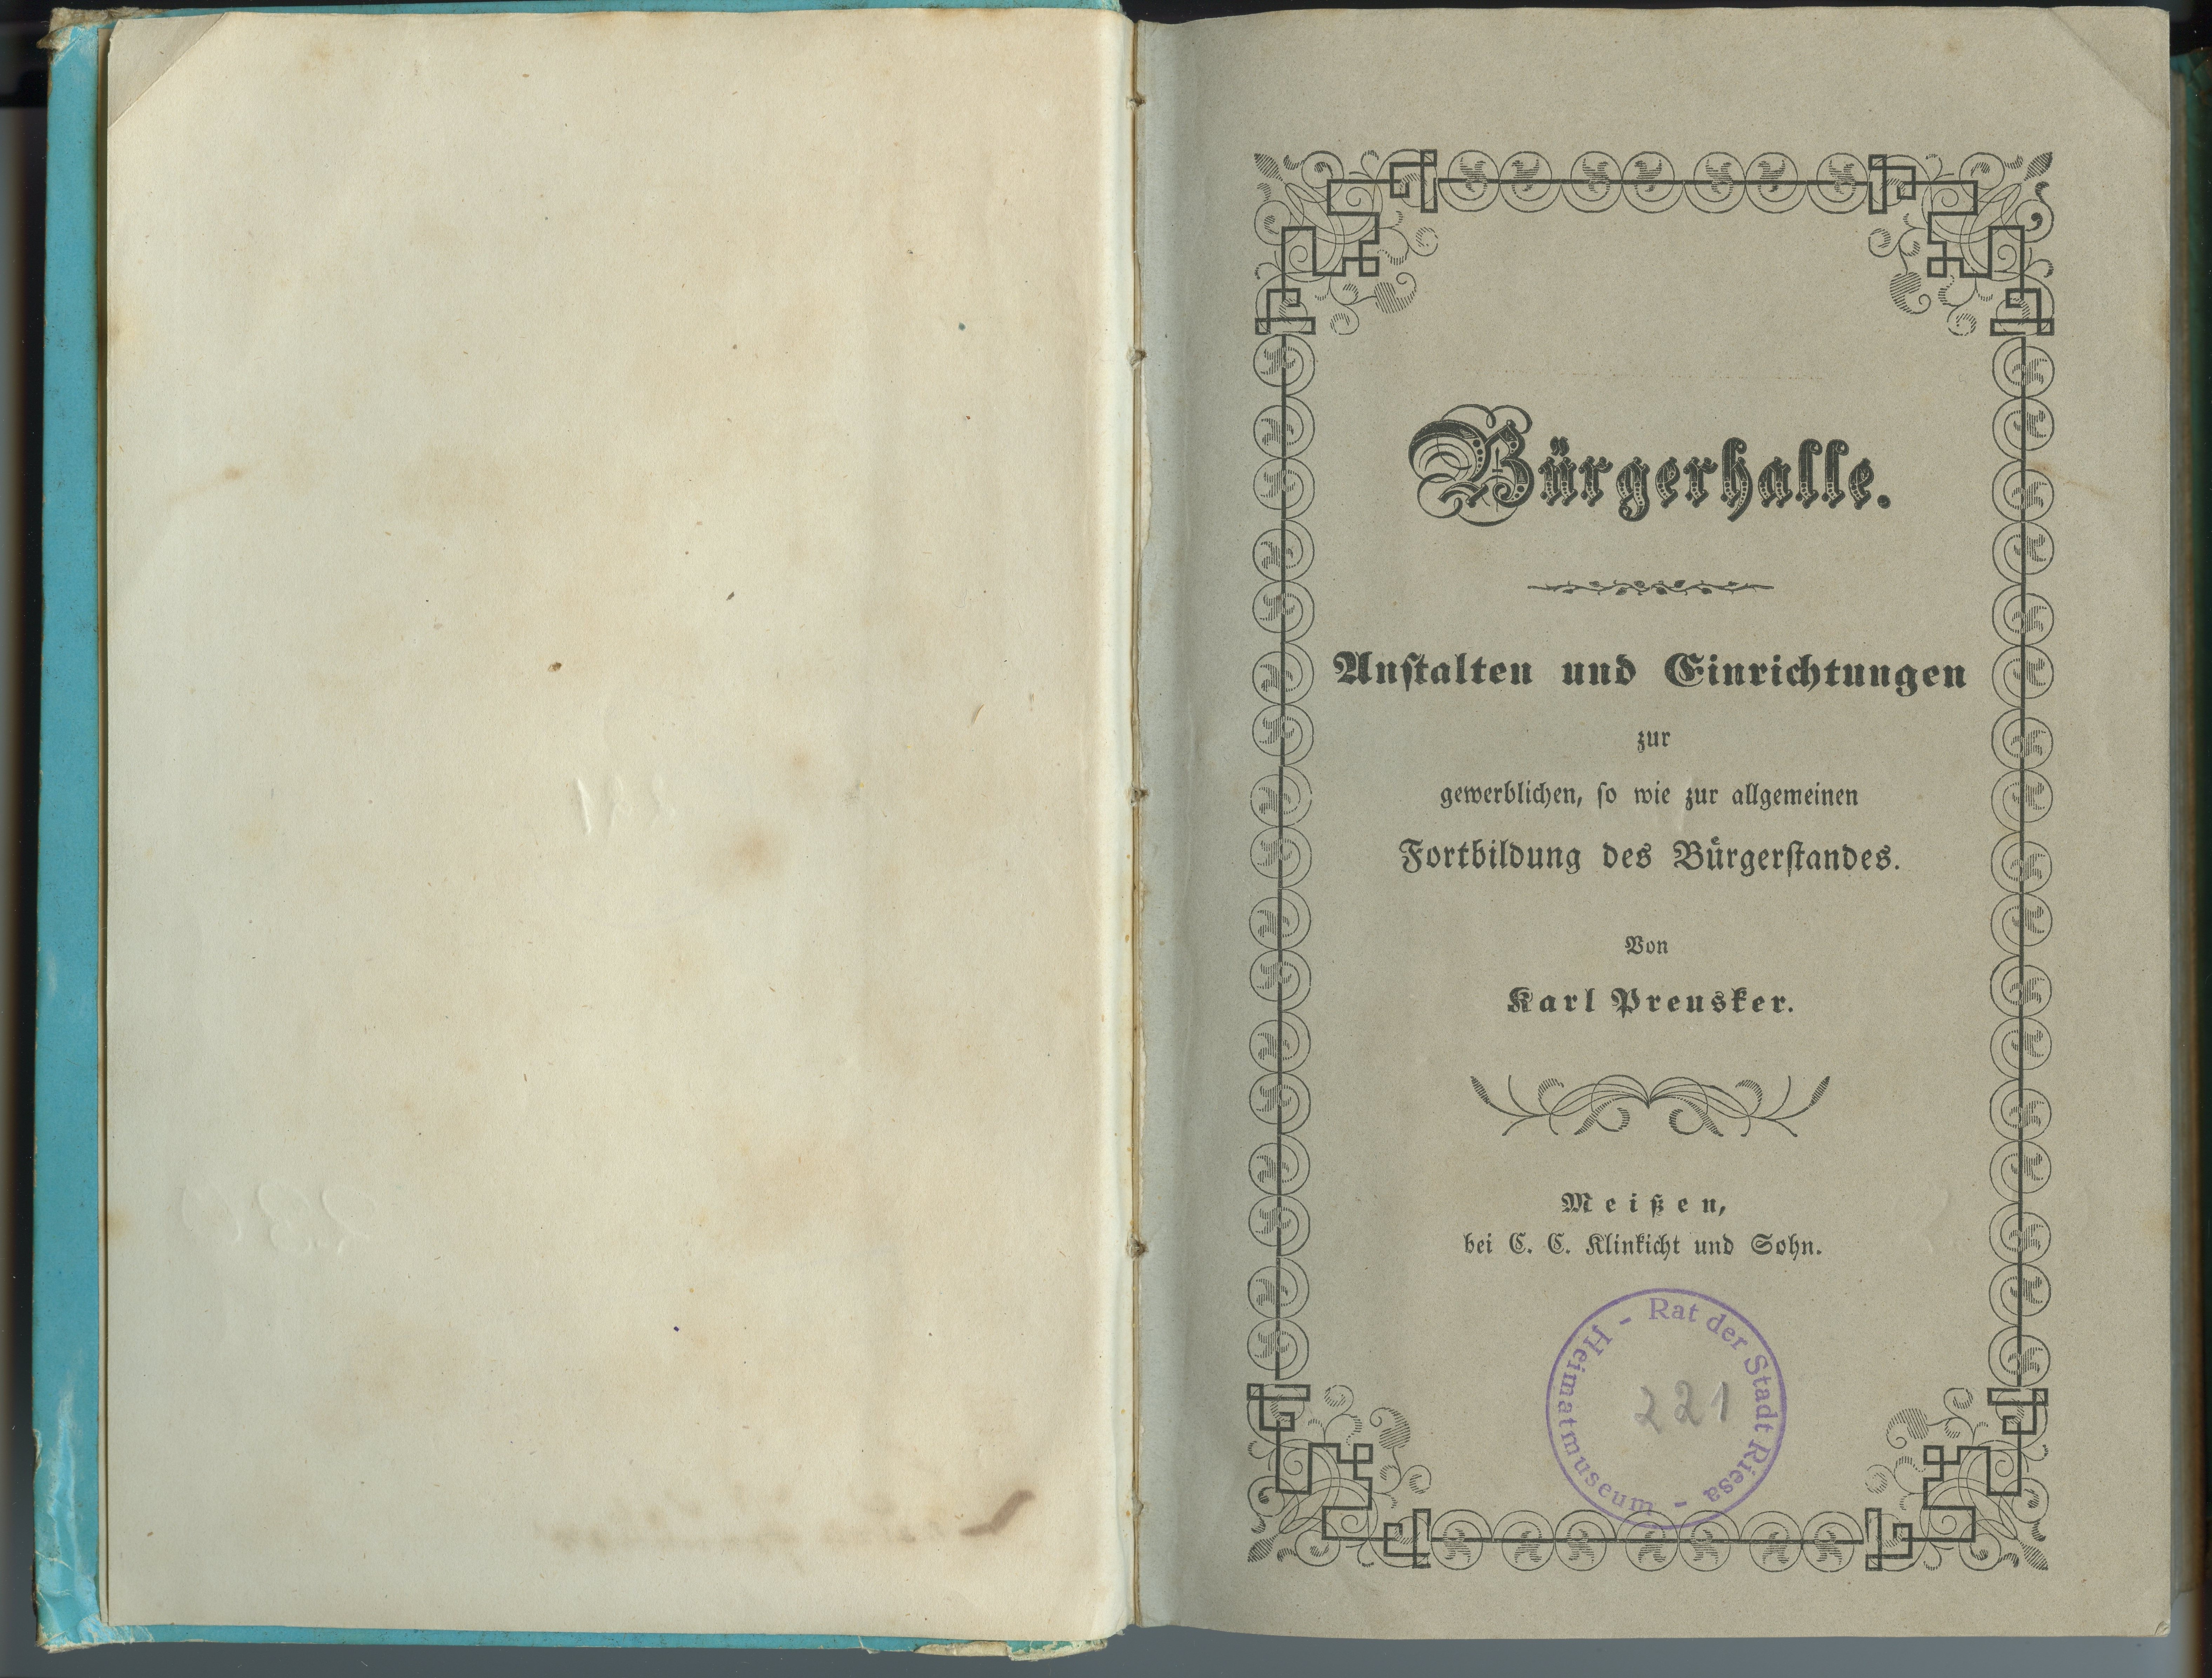 Preusker, Karl: Bürgerhalle [...]. 3 Hefte, 1847-1850 (Museum Alte Lateinschule CC BY-NC-SA)